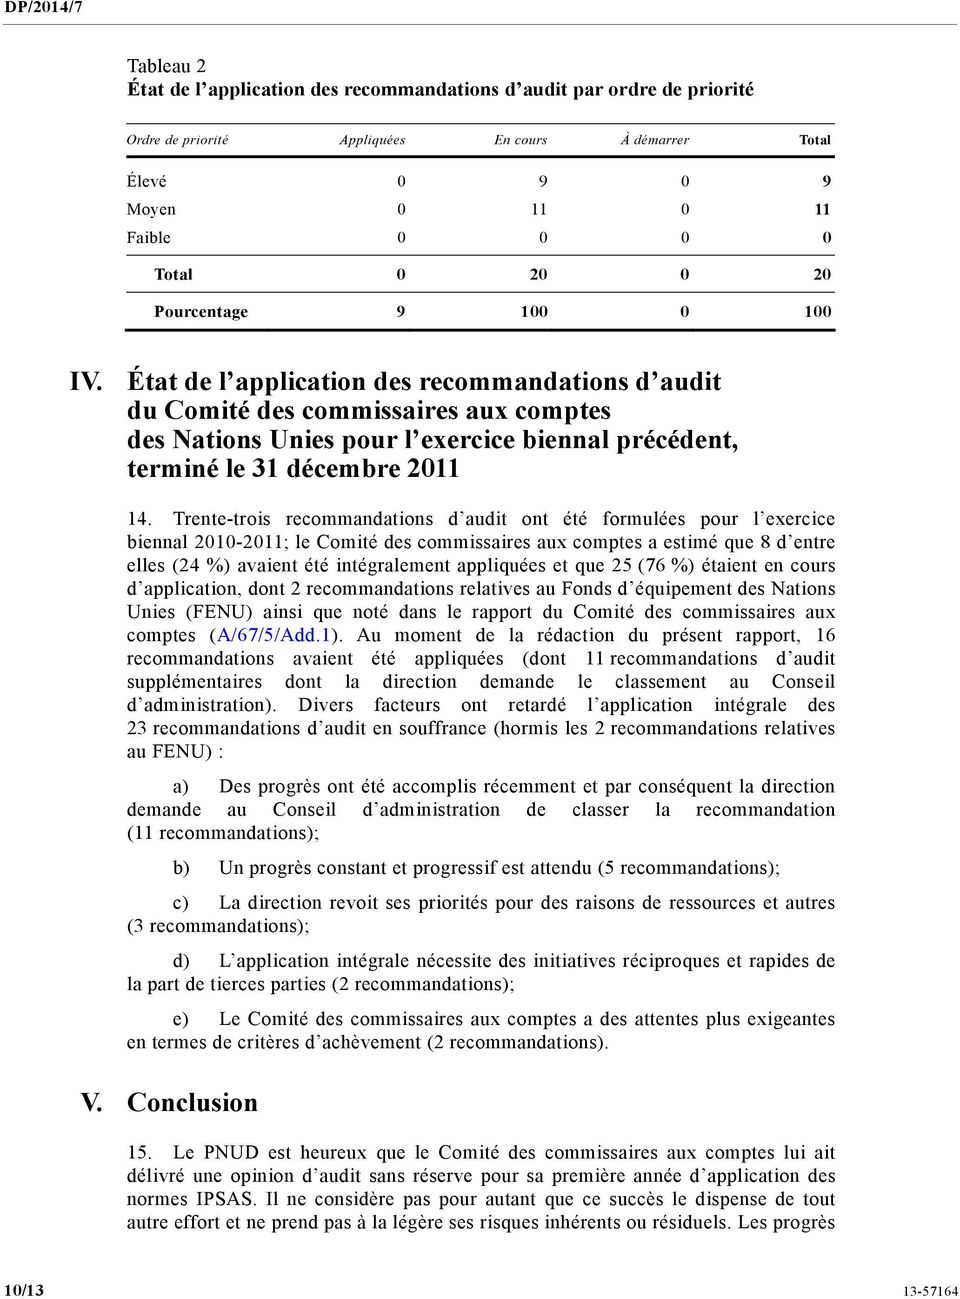 État de l application des recommandations d audit du Comité des commissaires aux comptes des Nations Unies pour l exercice biennal précédent, terminé le 31 décembre 2011 14.